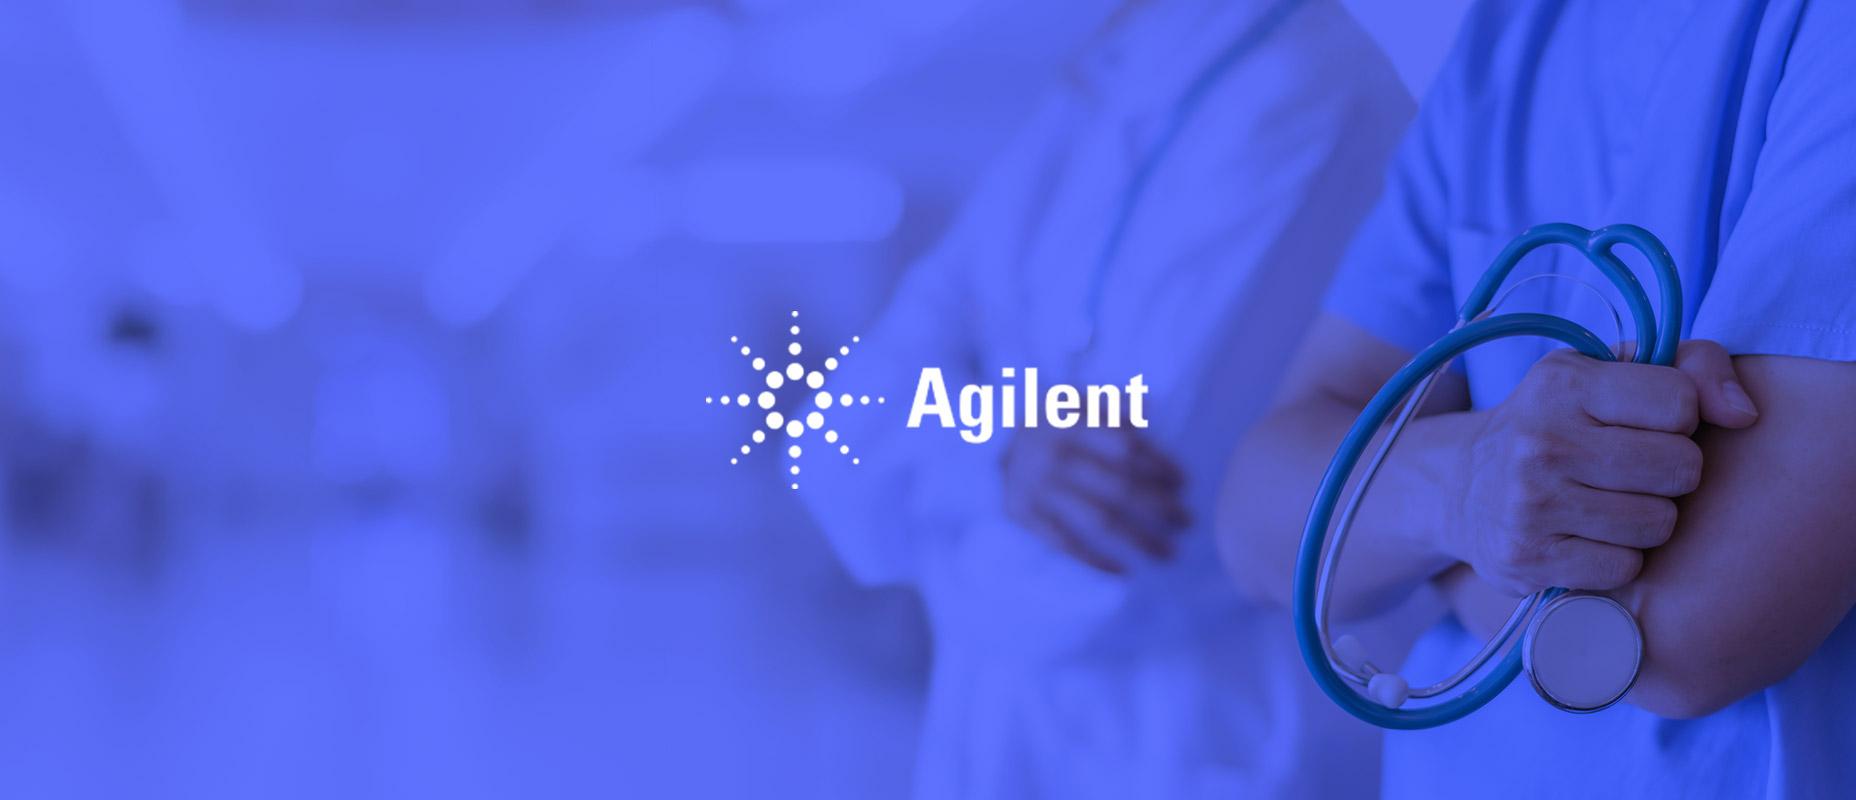 Agilent Technologies витратить на зворотний викуп акцій до 2 млрд USD